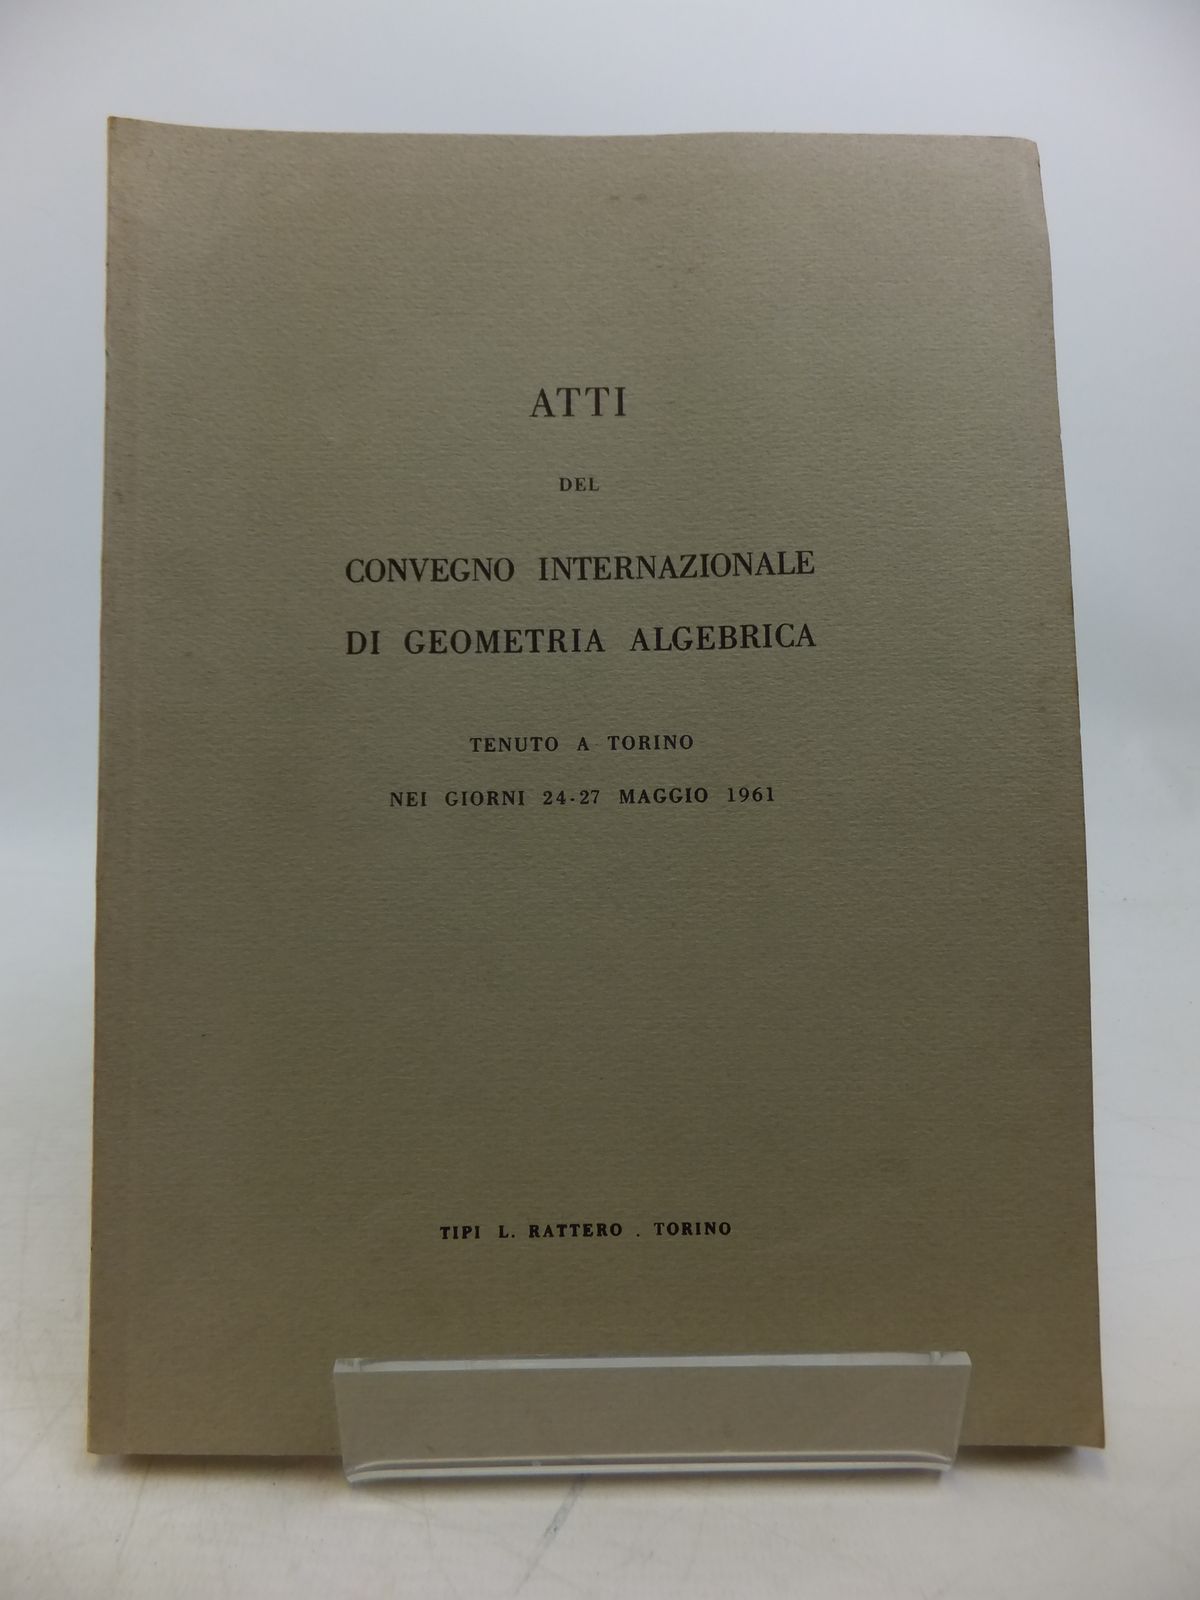 Photo of ATTI DEL CONVEGNO INTERNAZIONALE DI GEOMETRIA ALGEBRICA (STOCK CODE: 1811833)  for sale by Stella & Rose's Books